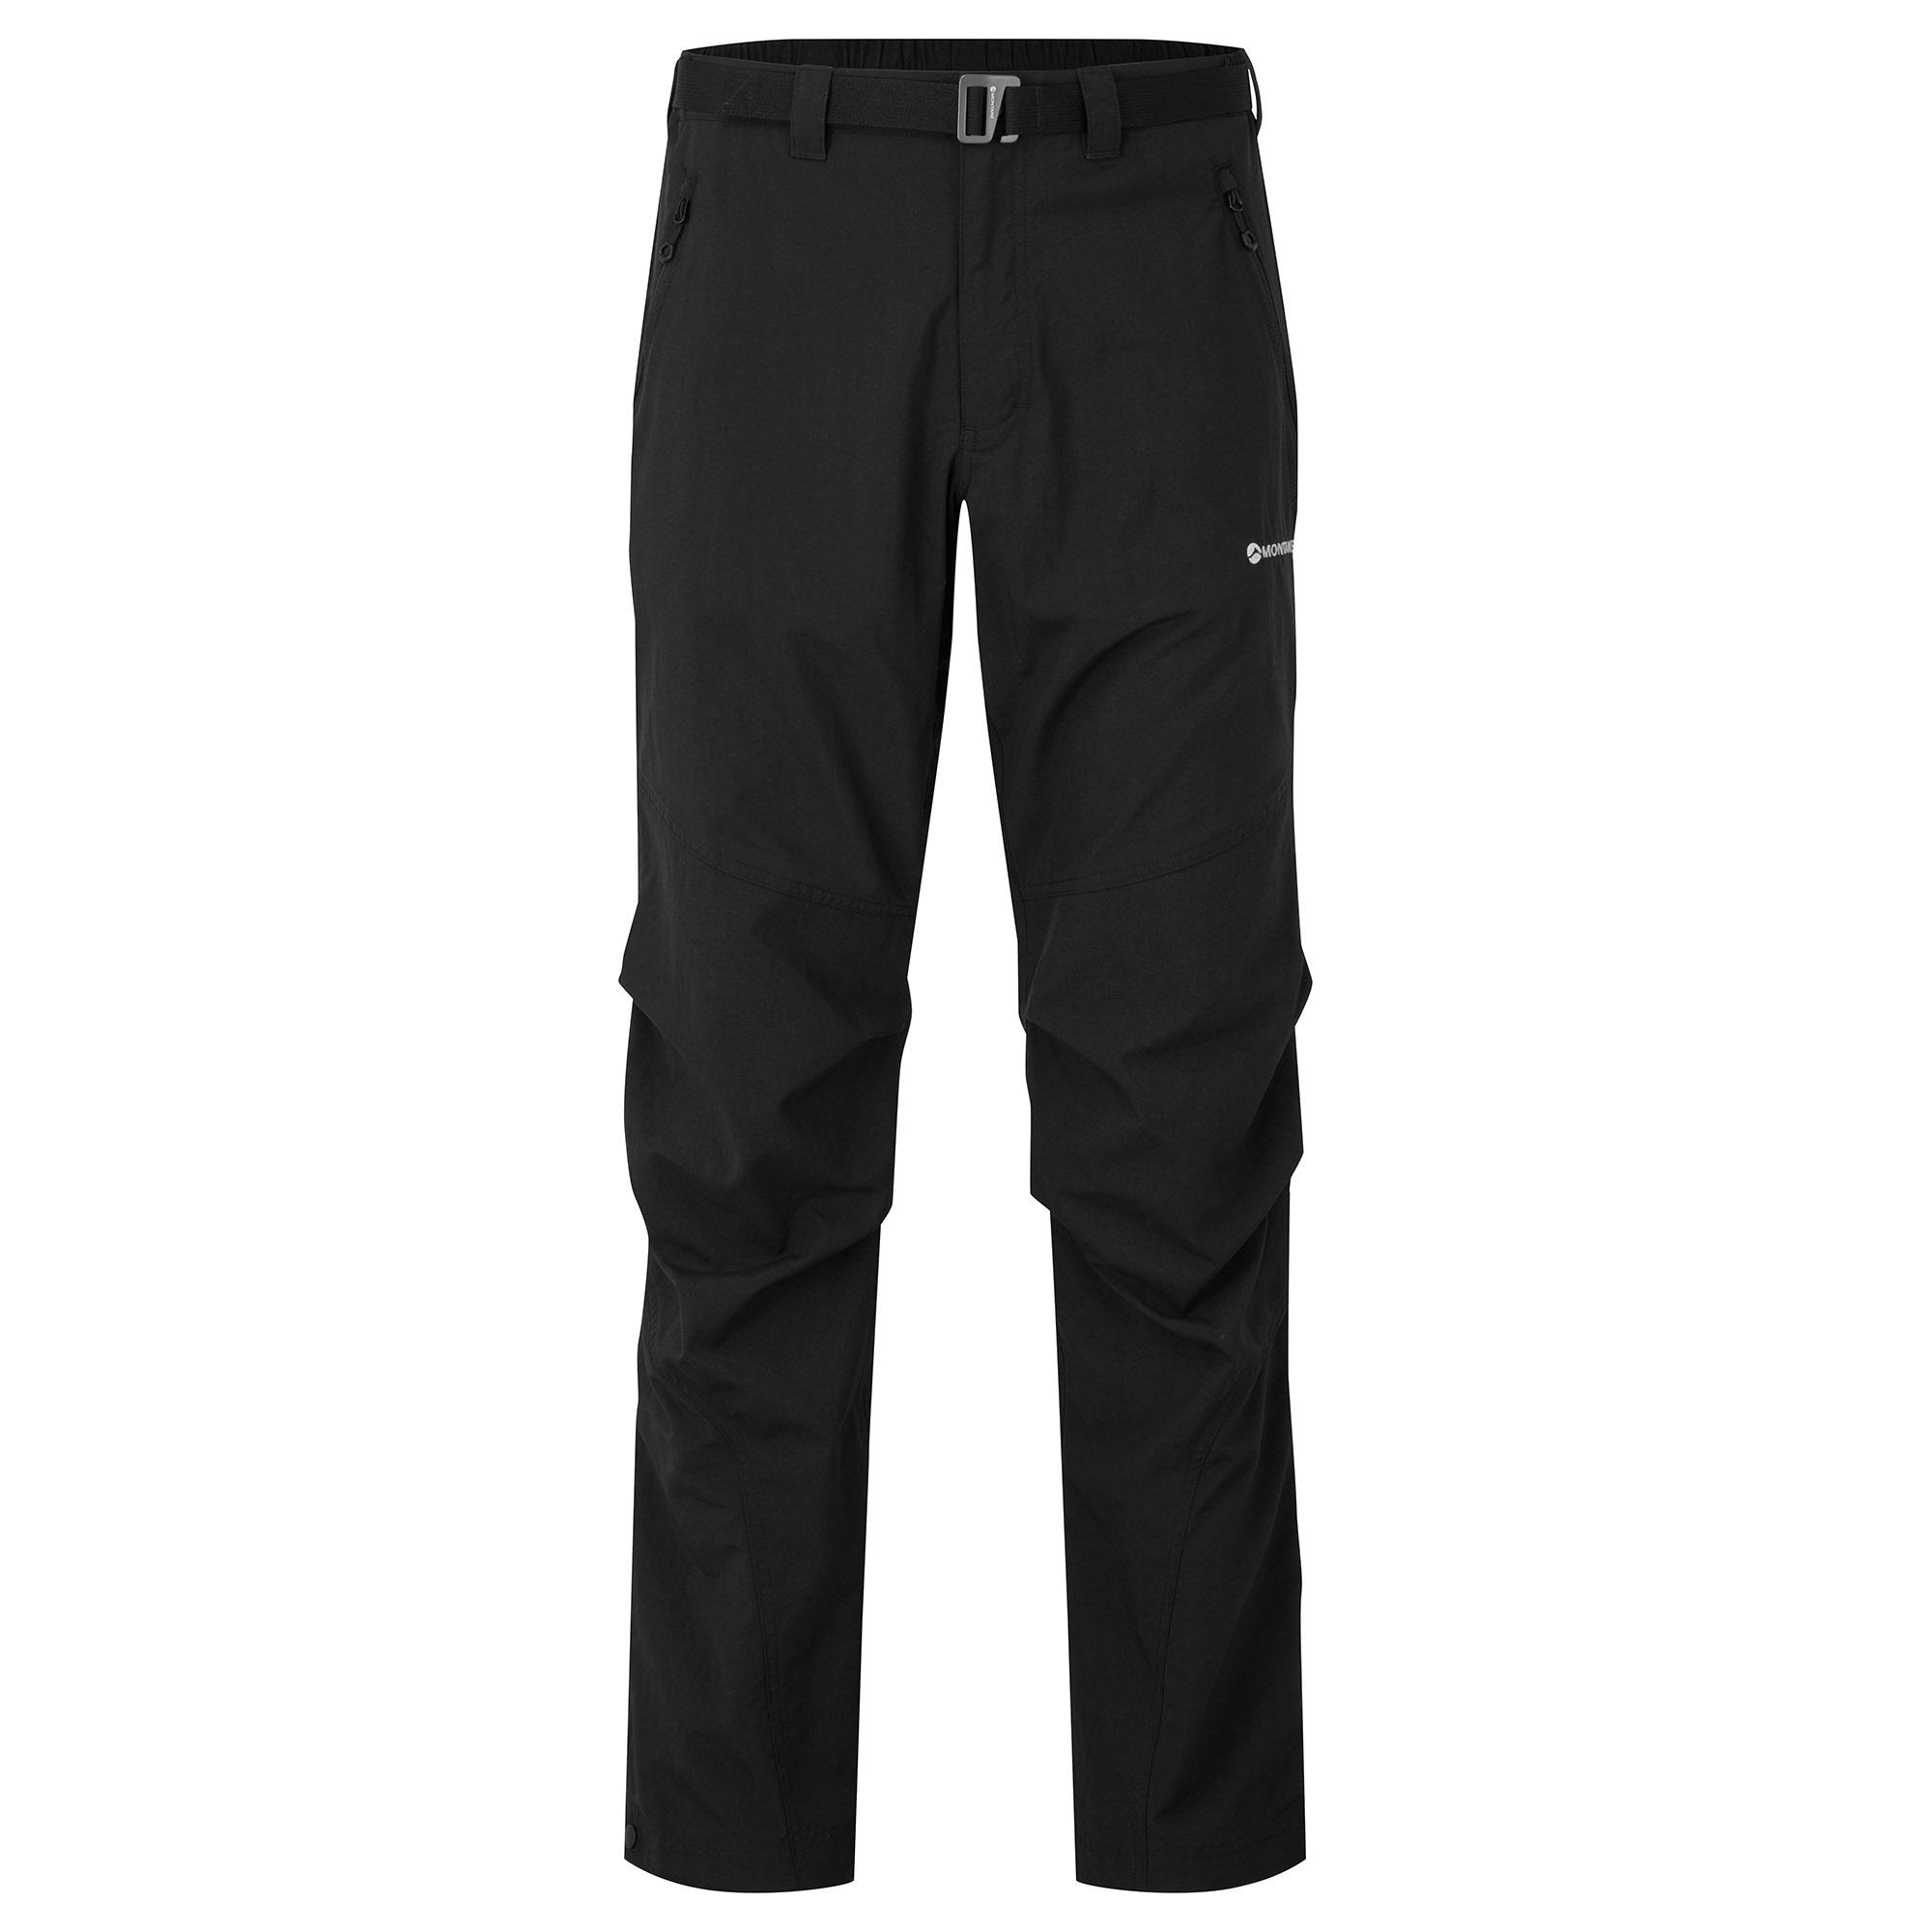 Montane pánské softshellové kalhoty Terra Pants - Zkrácené Nohavice Barva: black, Velikost: 36